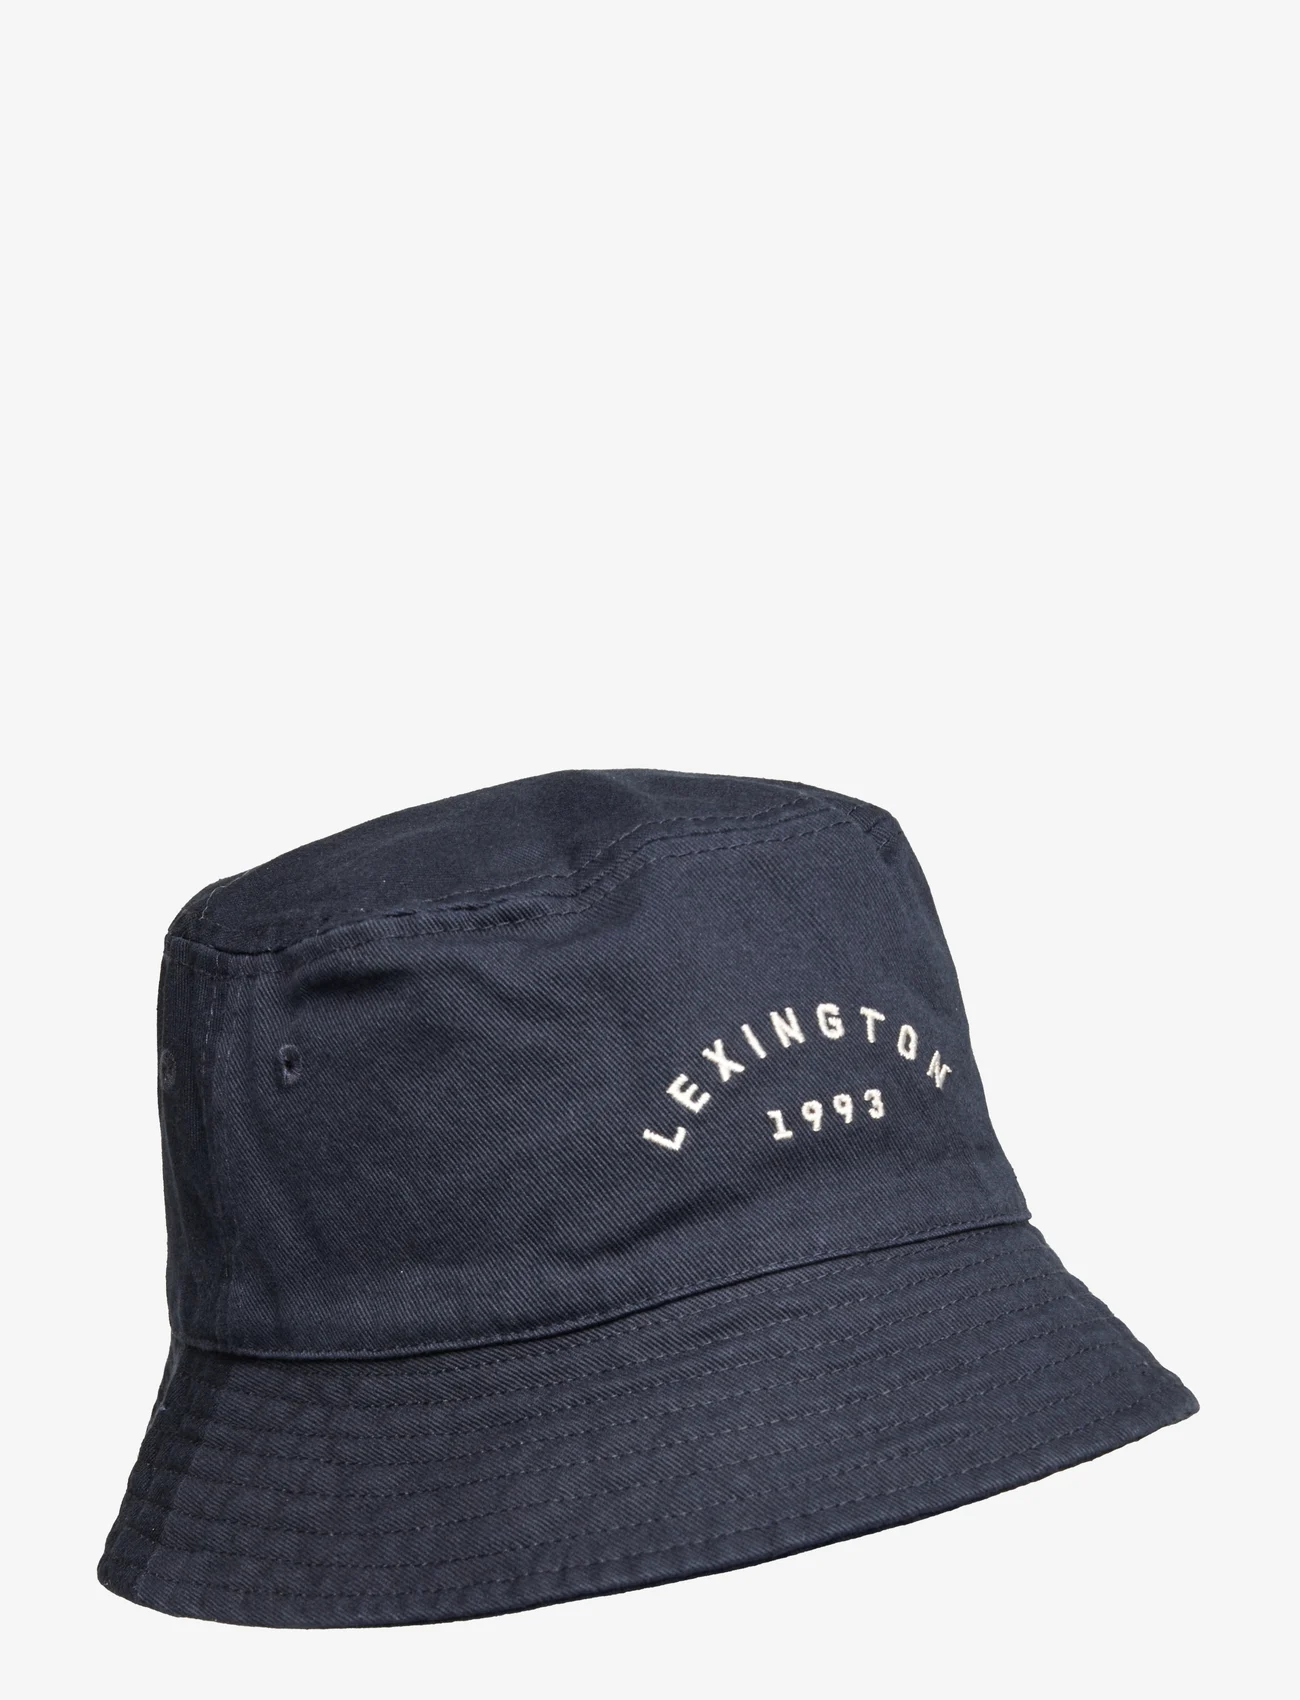 Lexington Clothing - Bridgehampton Bucket Hat - bucket hats - dark blue - 0